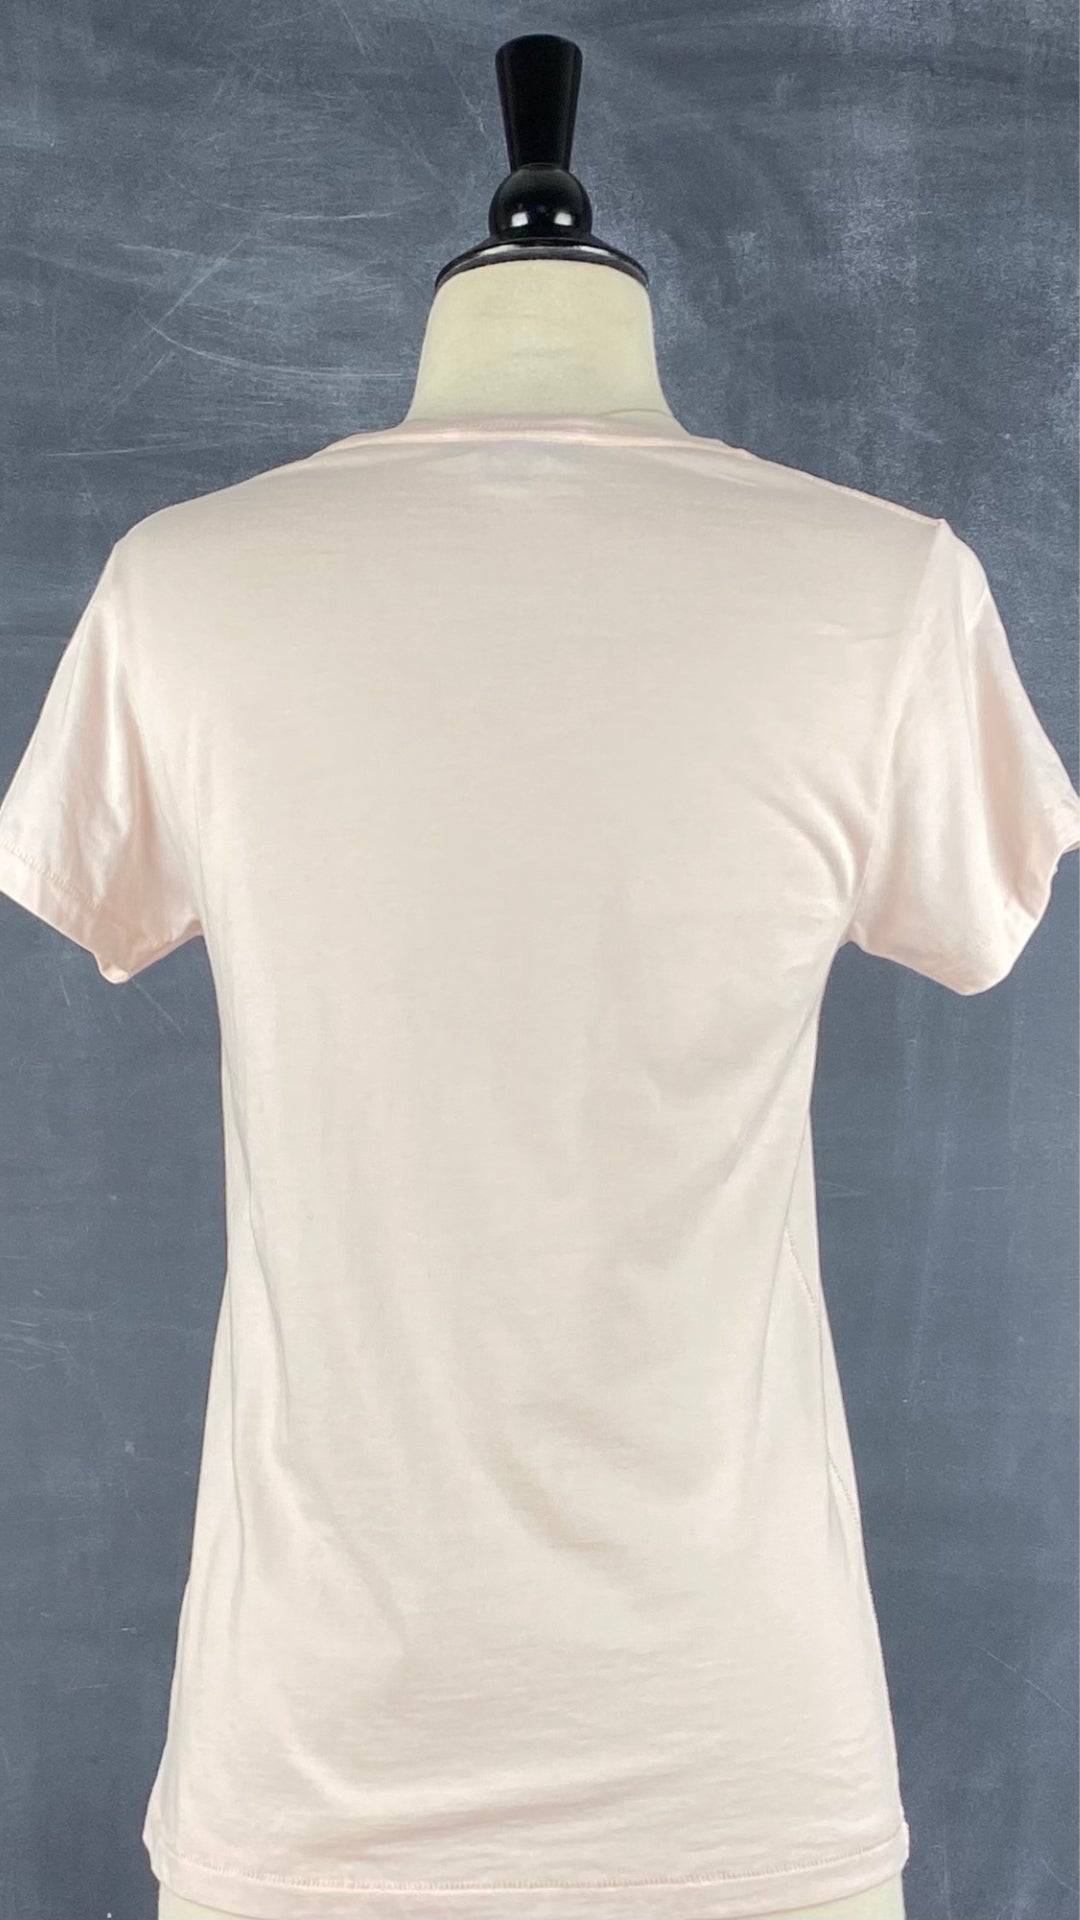 T-shirt rose doux en coton pima Tristan, taille xs. Vue de dos.